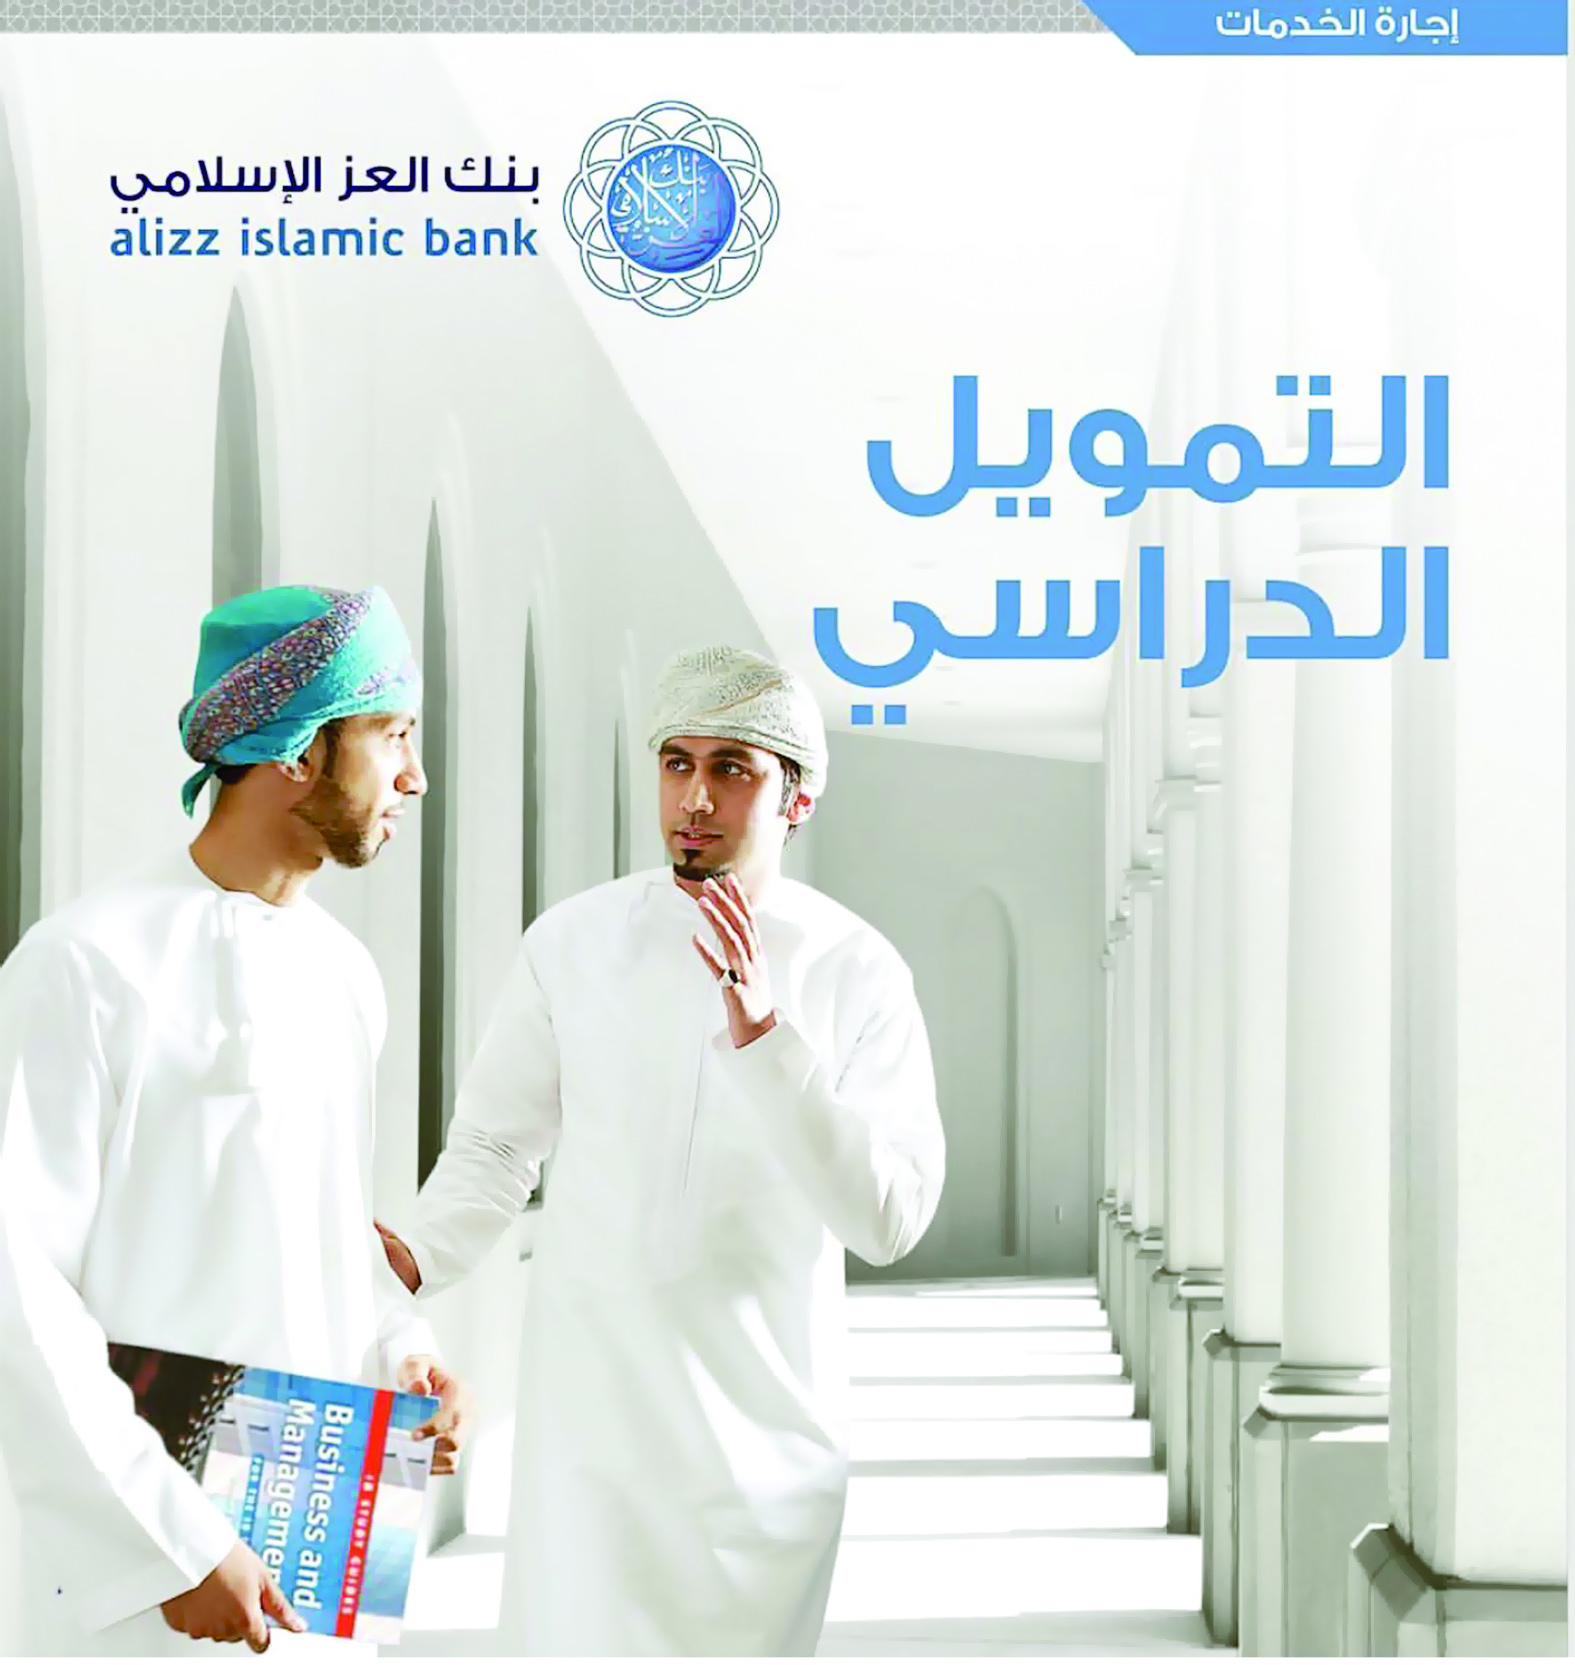 «العز الإسلامي» يقدم منتج «التمويل الدراسي» لمختلف المراحل التعليمية